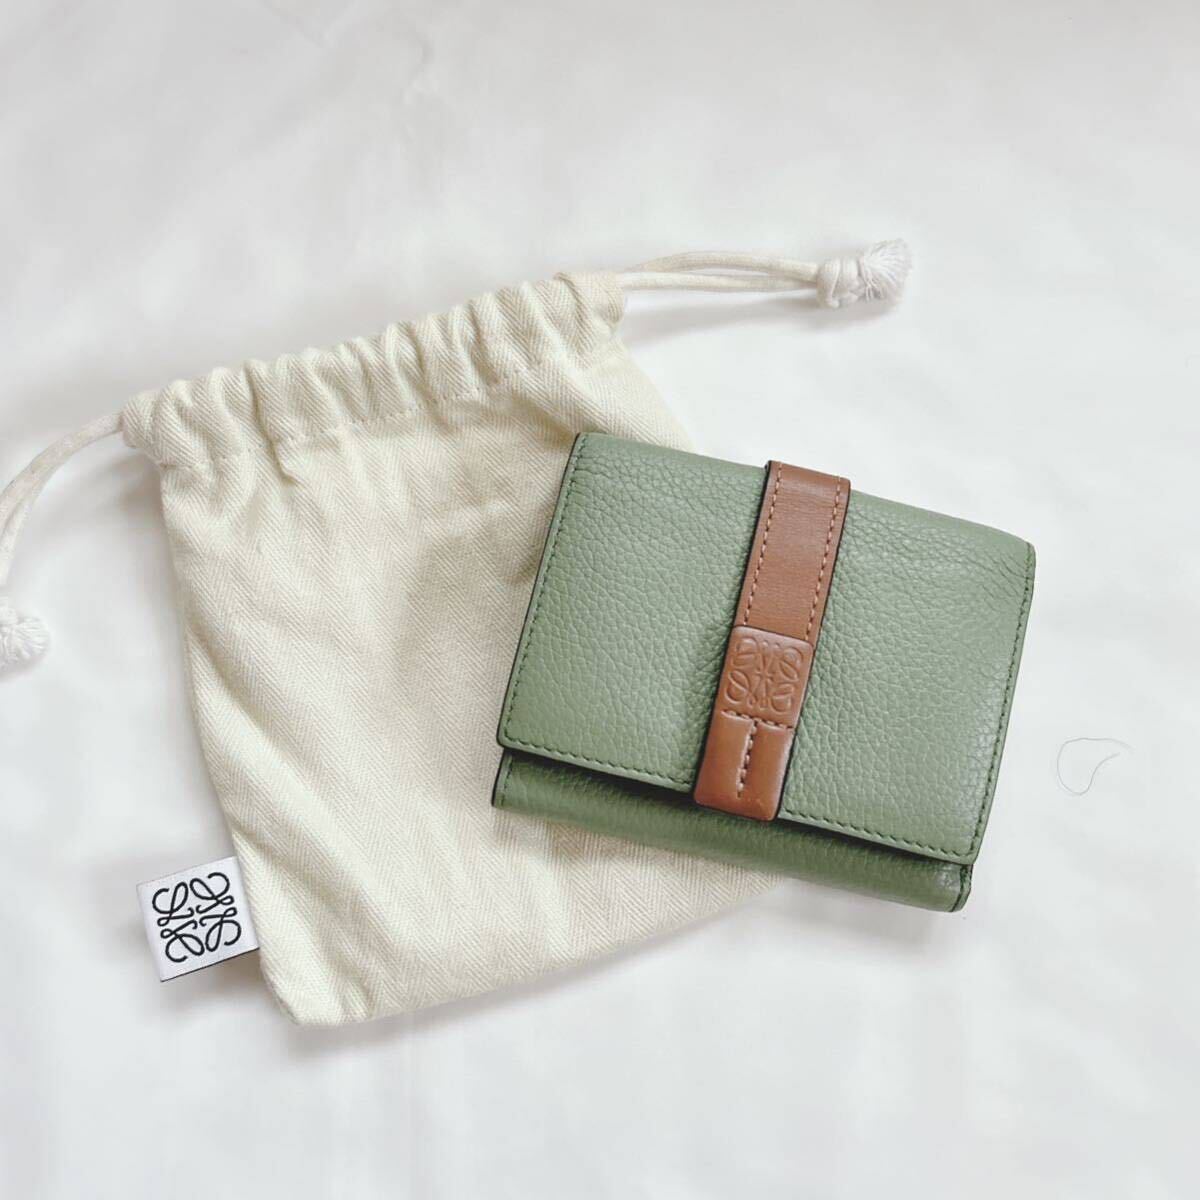 1 иен прекрасный товар LOEWE Loewe три складывать кошелек бумажник кошелек кожа машина f кожа compact Mini зеленый × Brown сумка для хранения имеется 